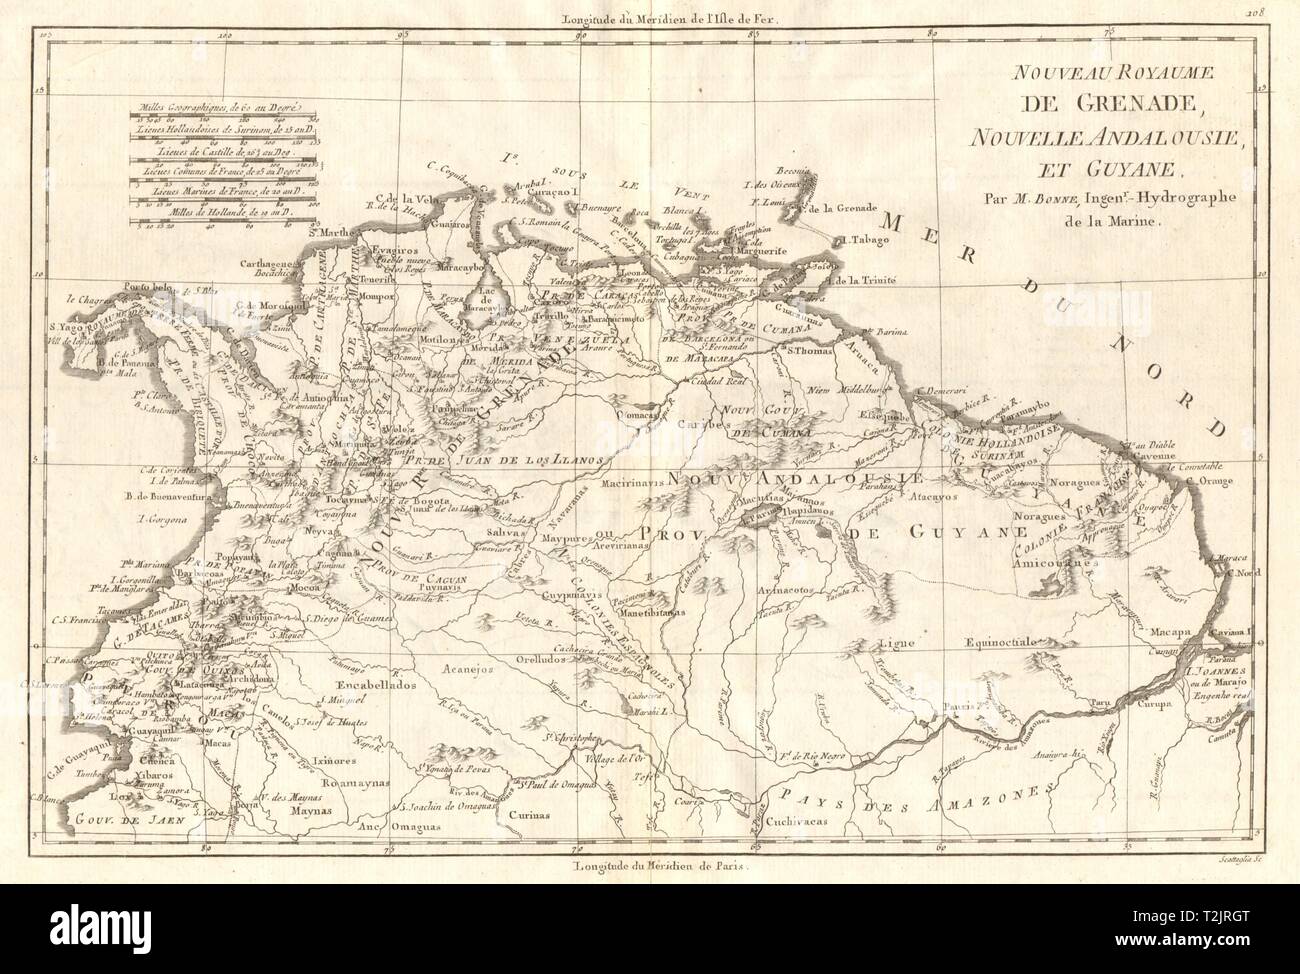 Nouveau Royaume de Grenade, Nouvelle Andalousie et Guyane. BONNE vieille carte 1790 Banque D'Images